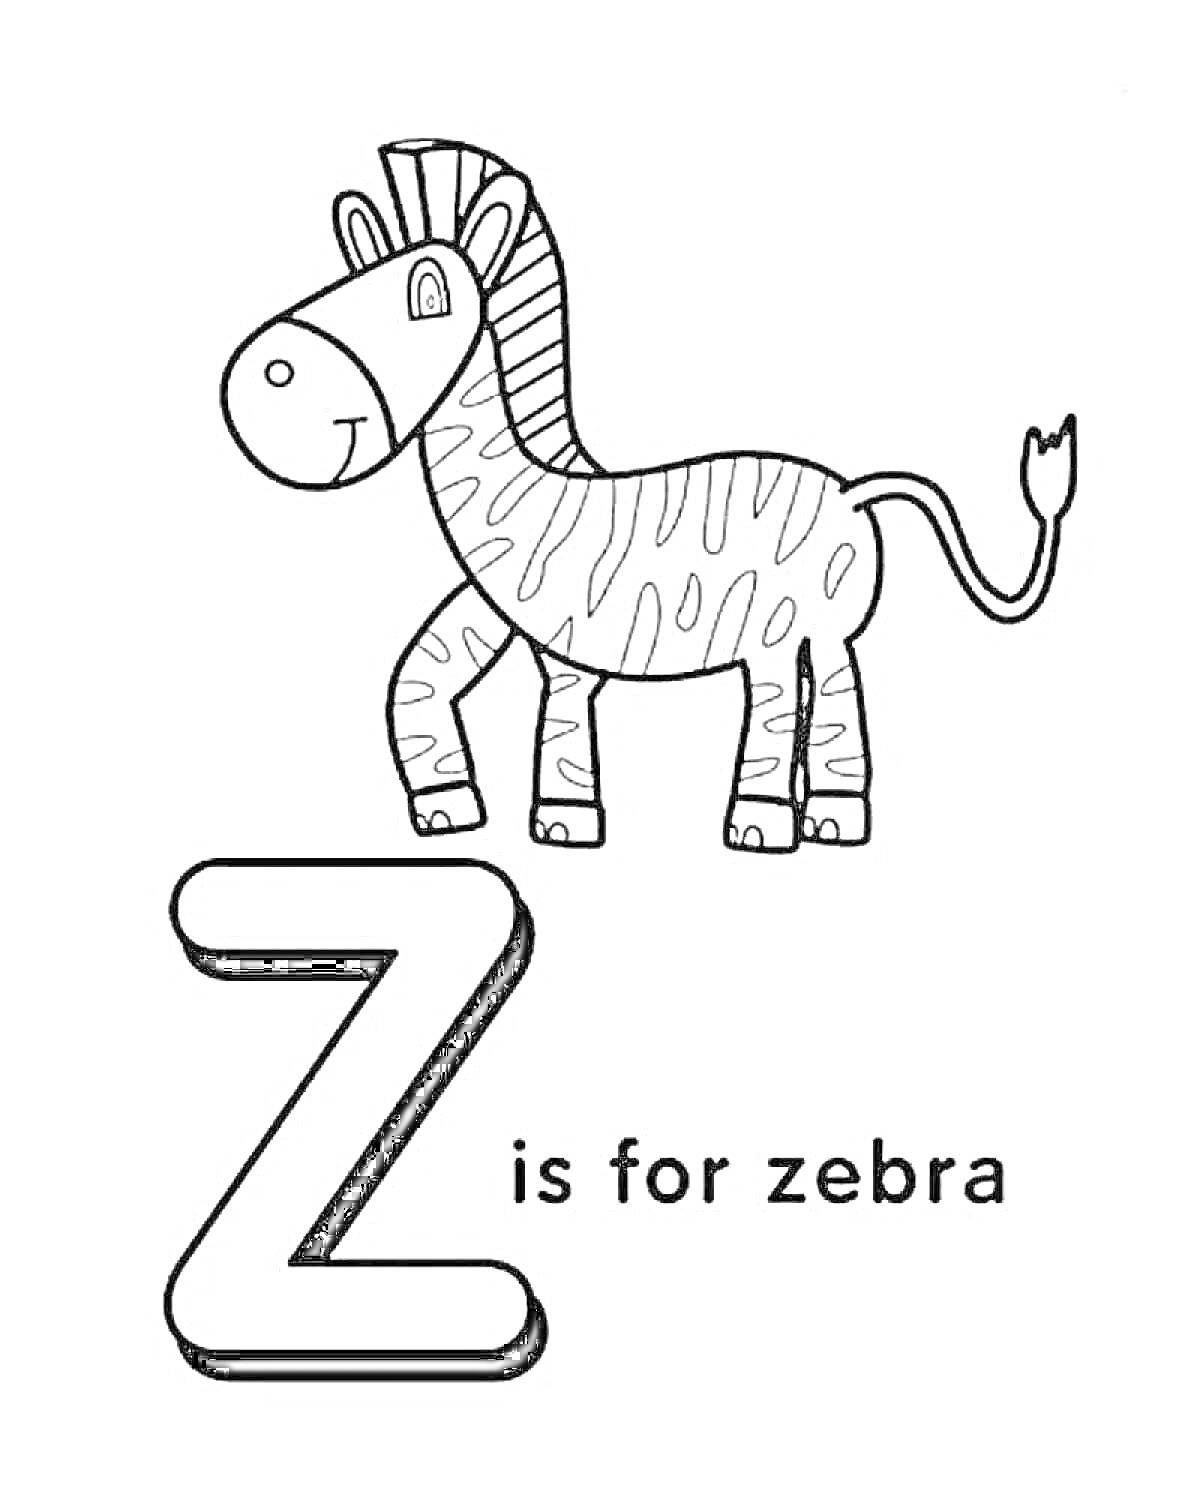 Раскраска Z is for zebra - раскраска с иллюстрацией зебры, буквой Z и текстом 